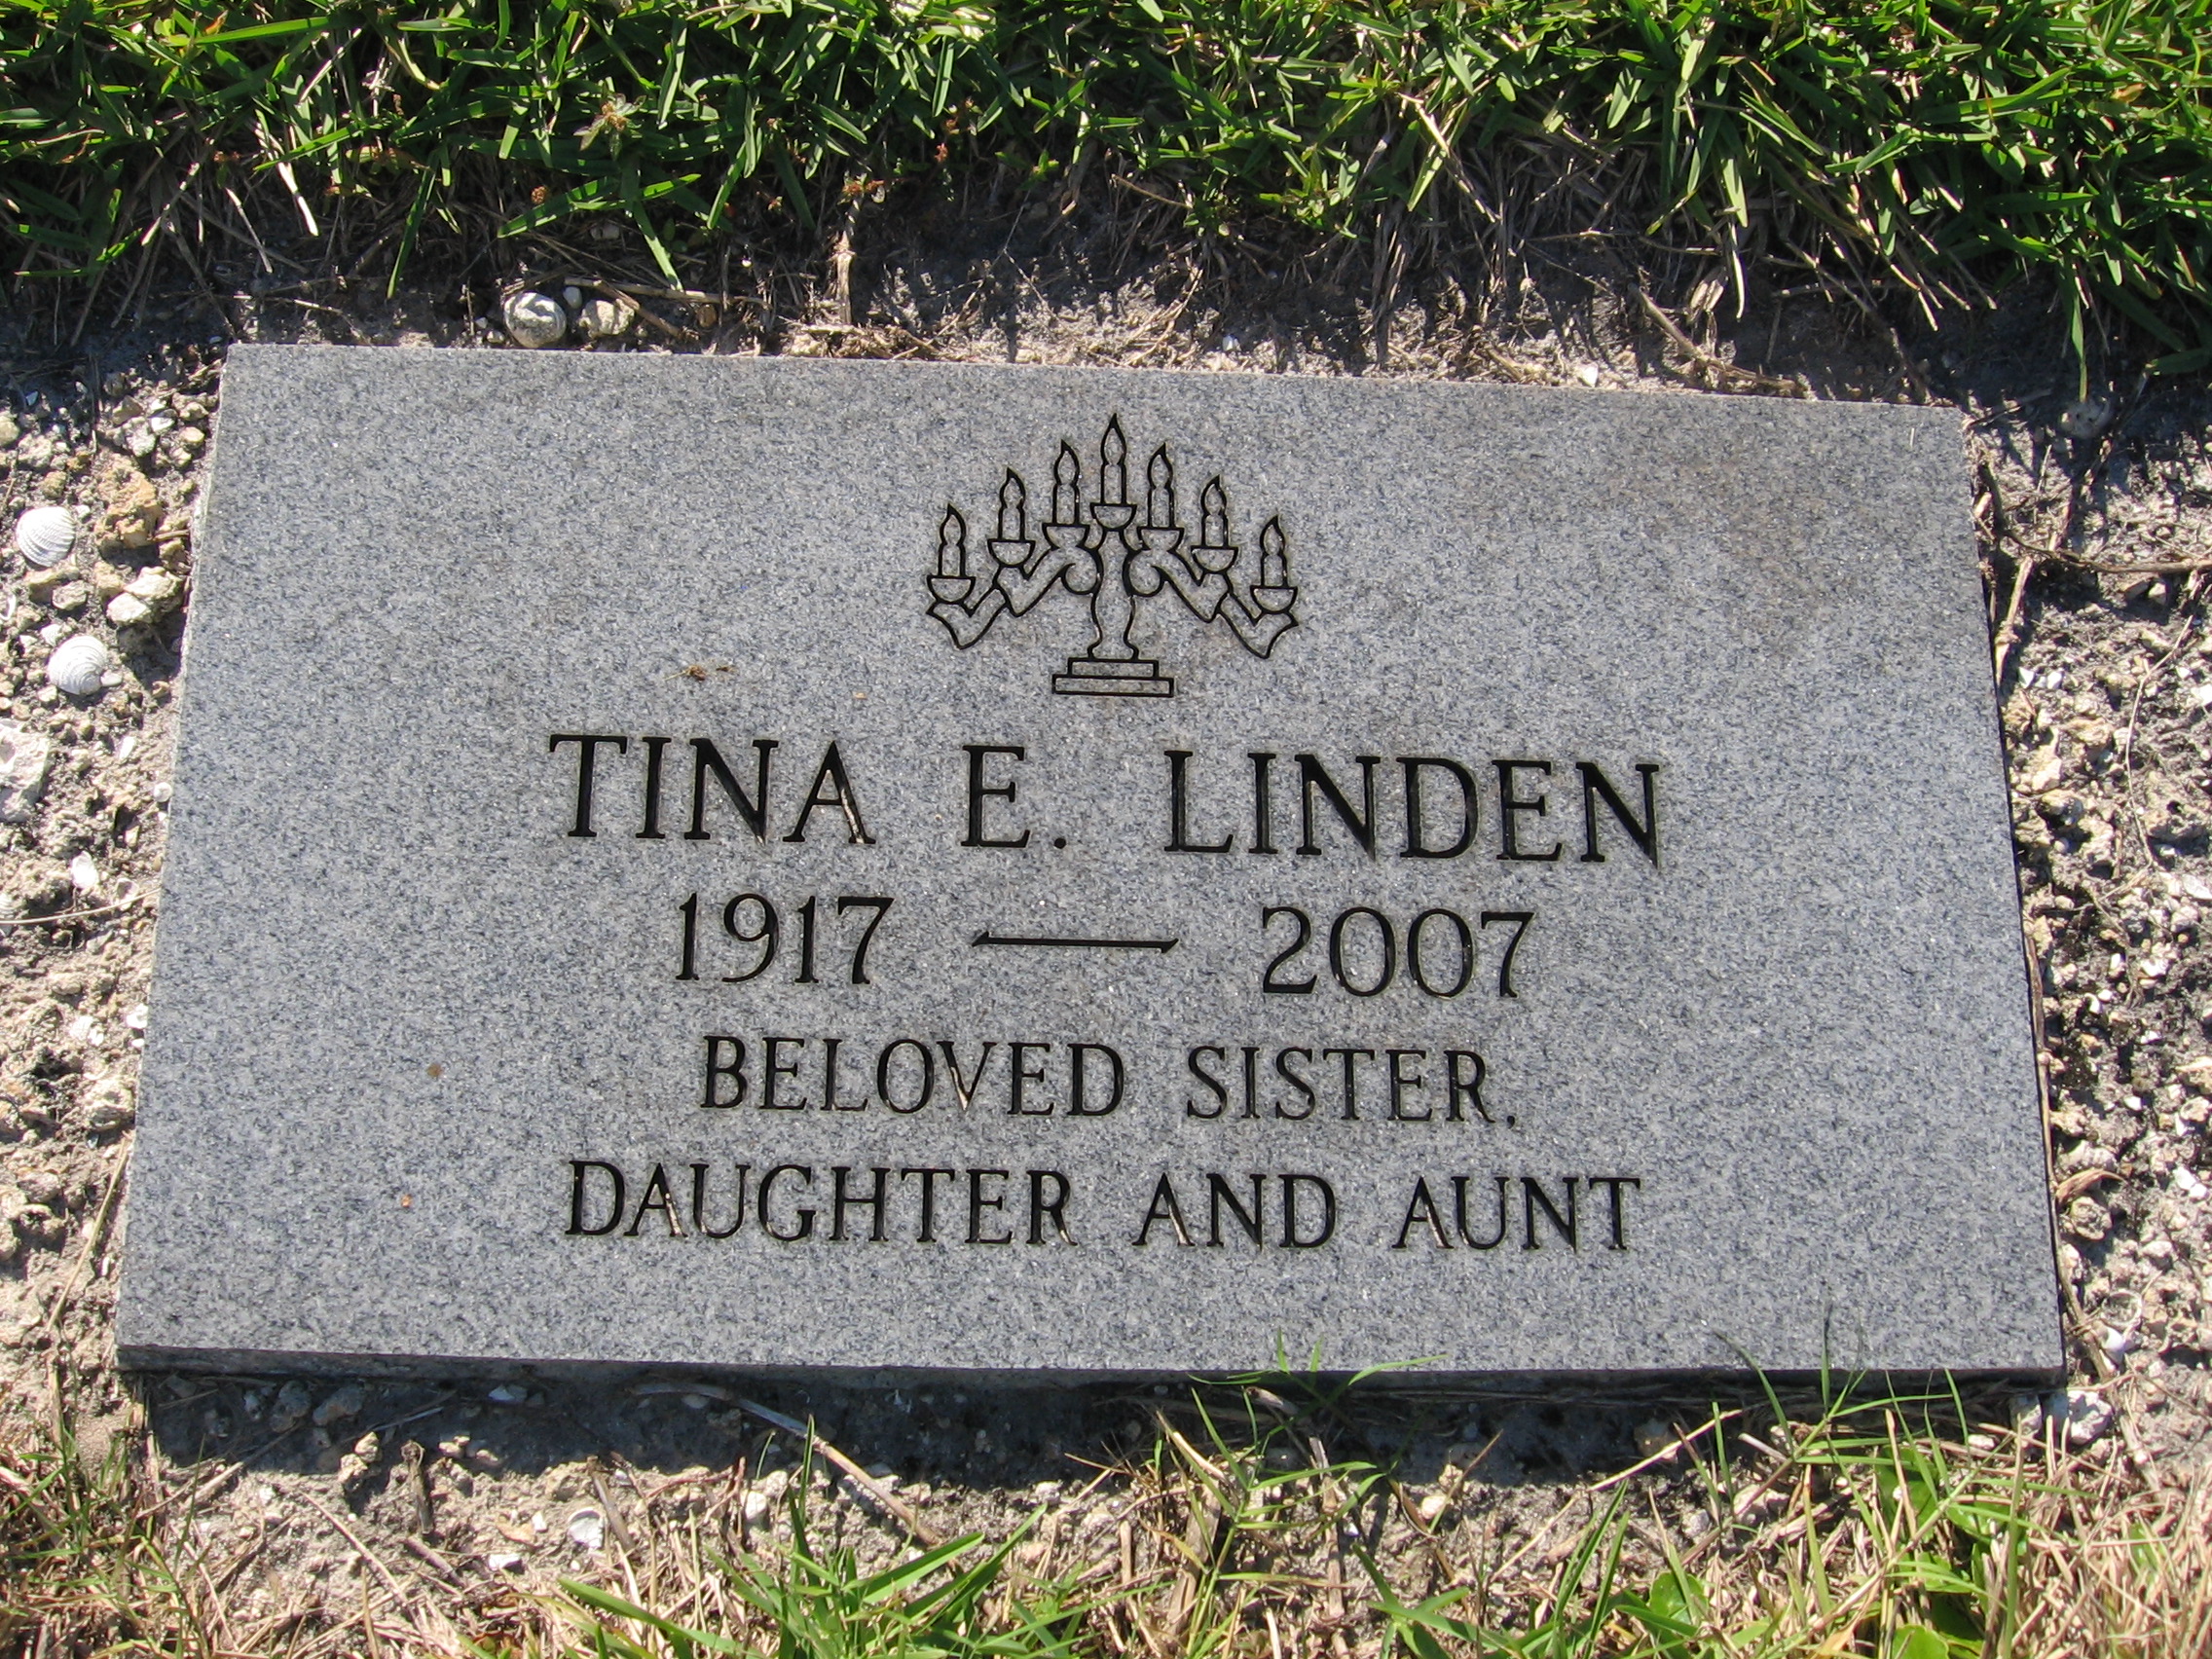 Tina E Linden